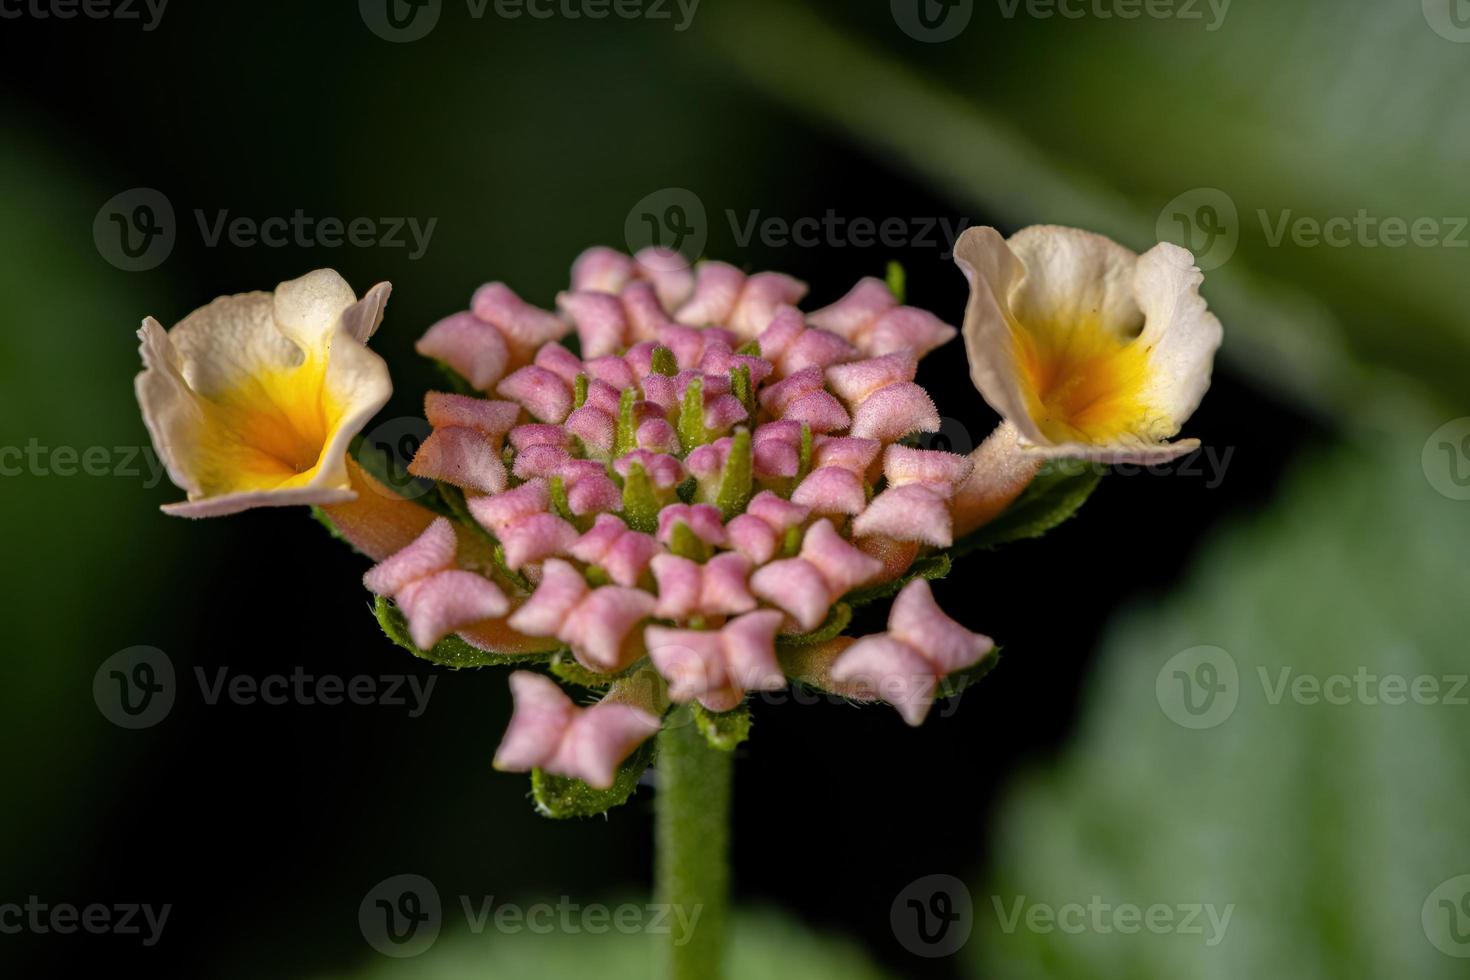 fiore di lantana comune foto